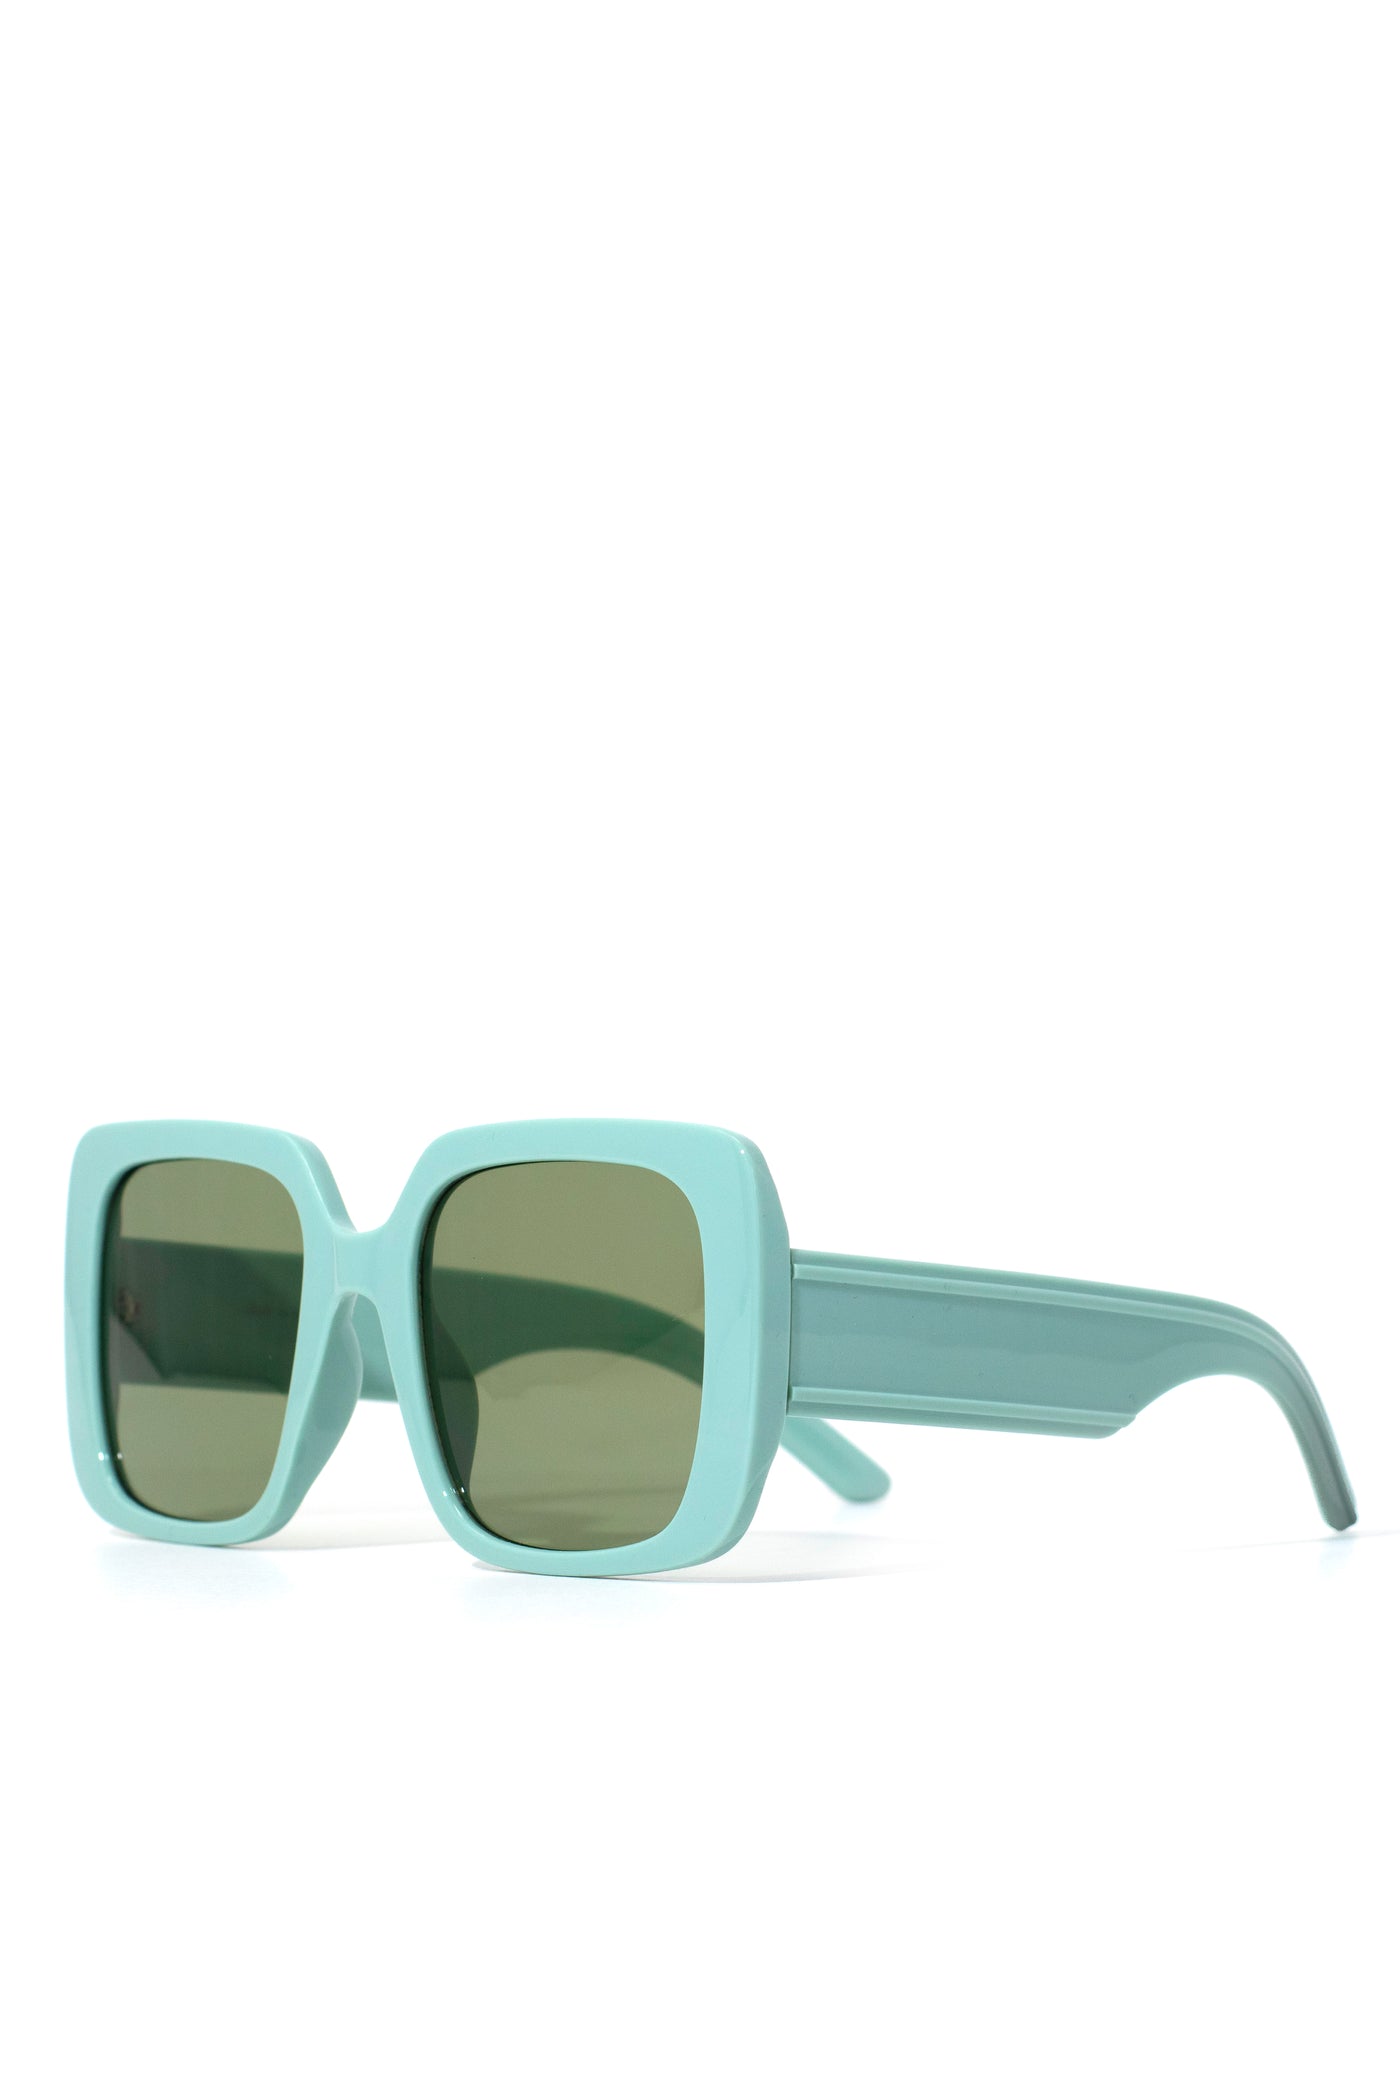 Jayla - Green Sunglasses